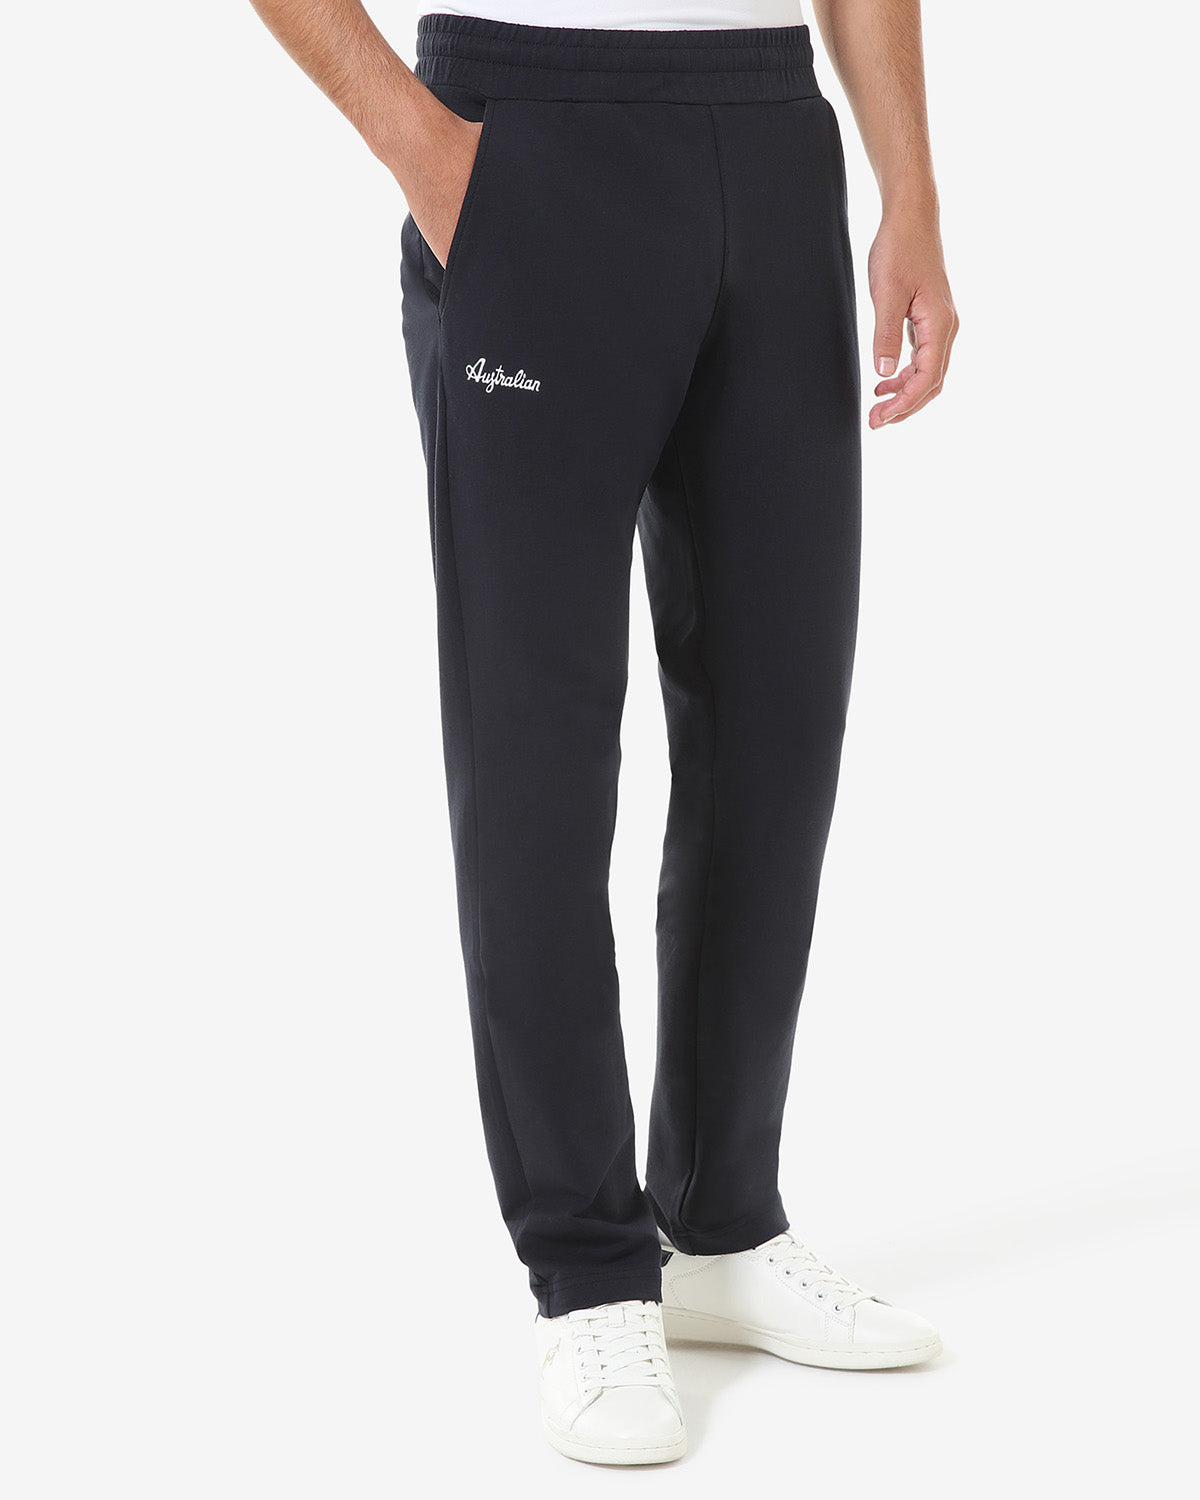 Elastic Fleece Pant: Australian Sportswear